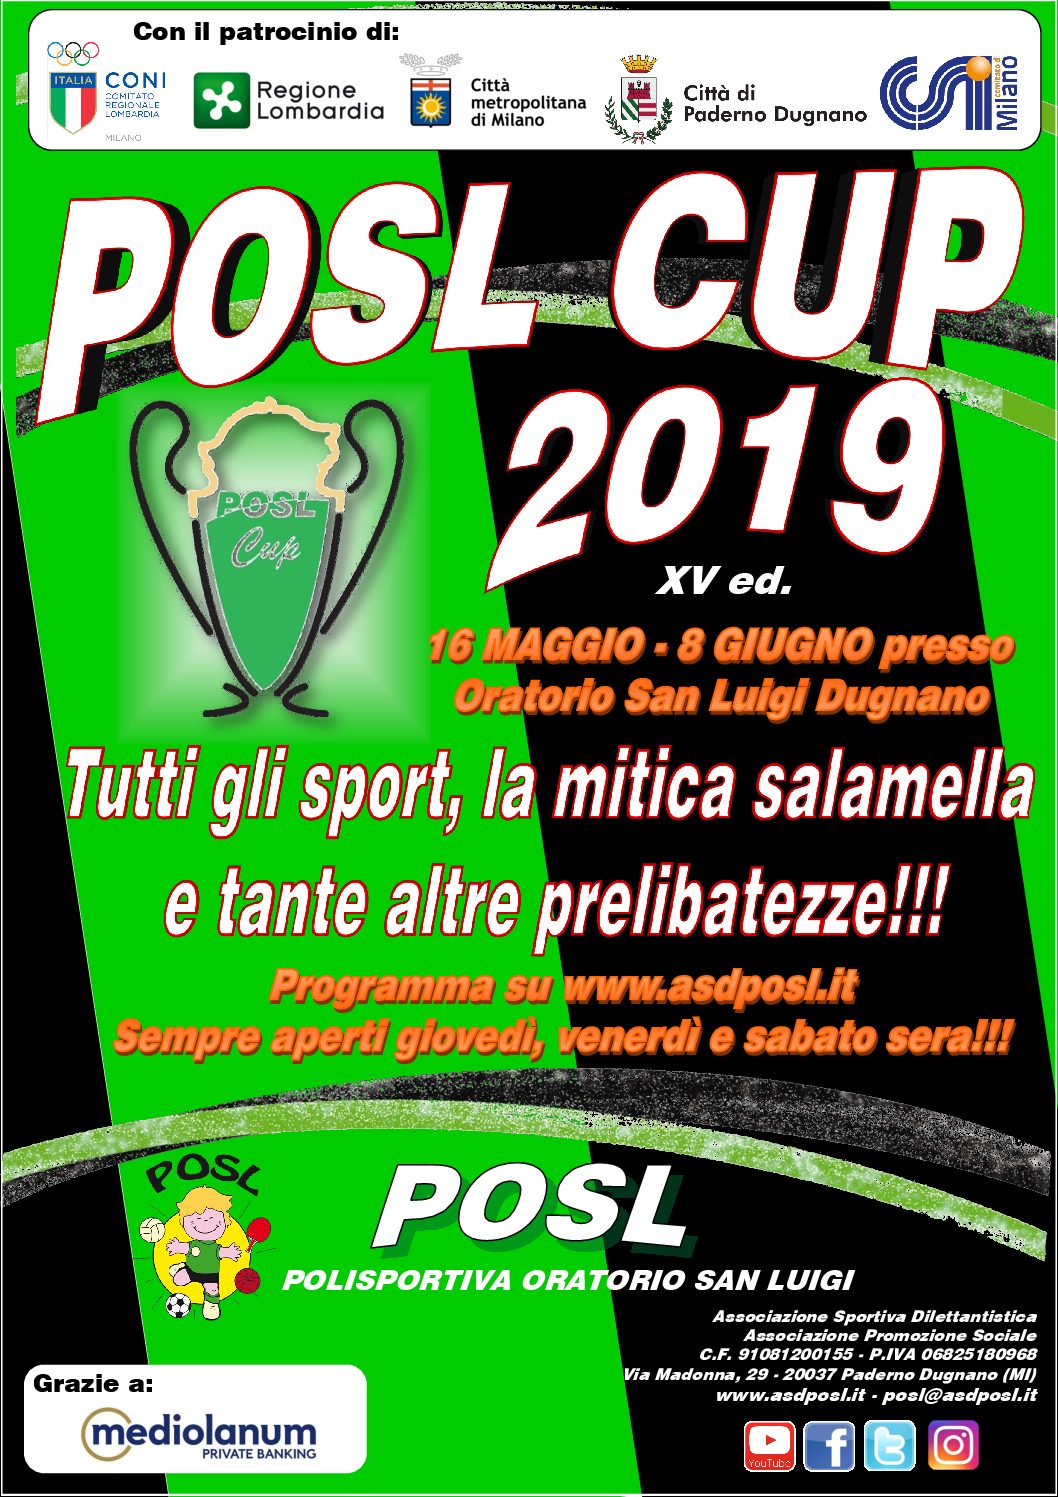 POSL CUP 2016: il via il 16 maggio!